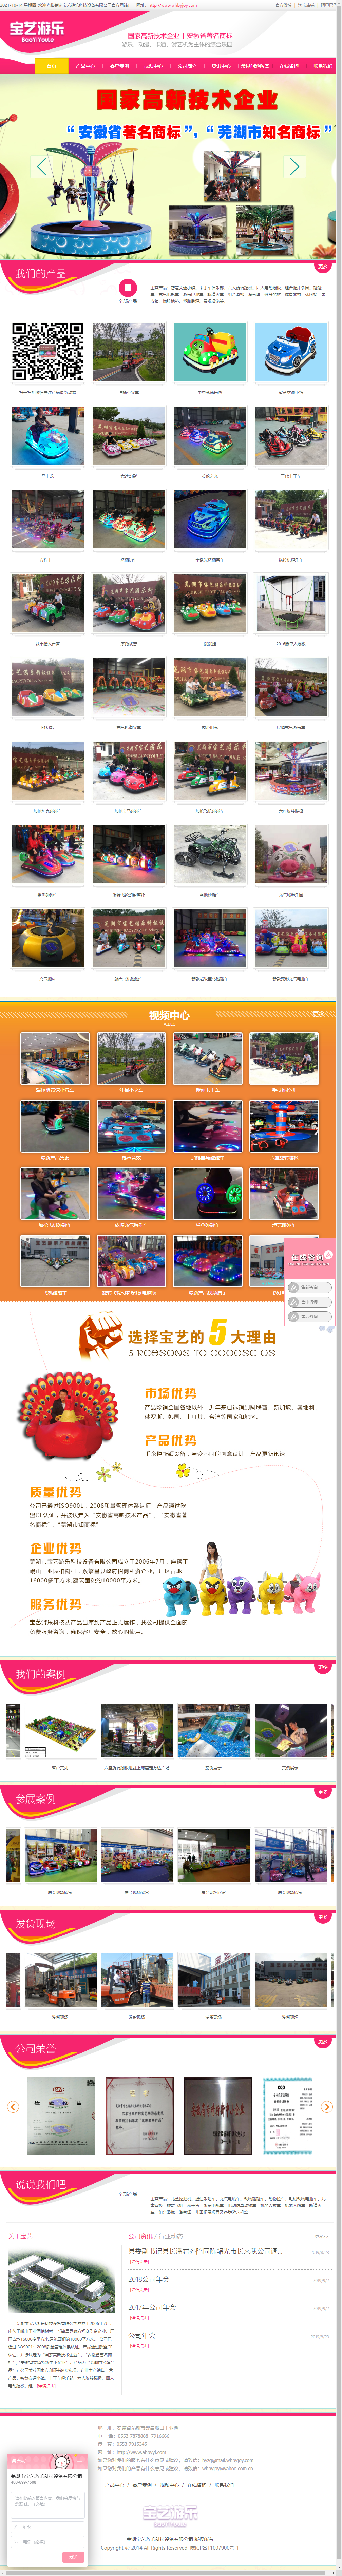 芜湖市宝艺游乐科技设备有限公司网站案例